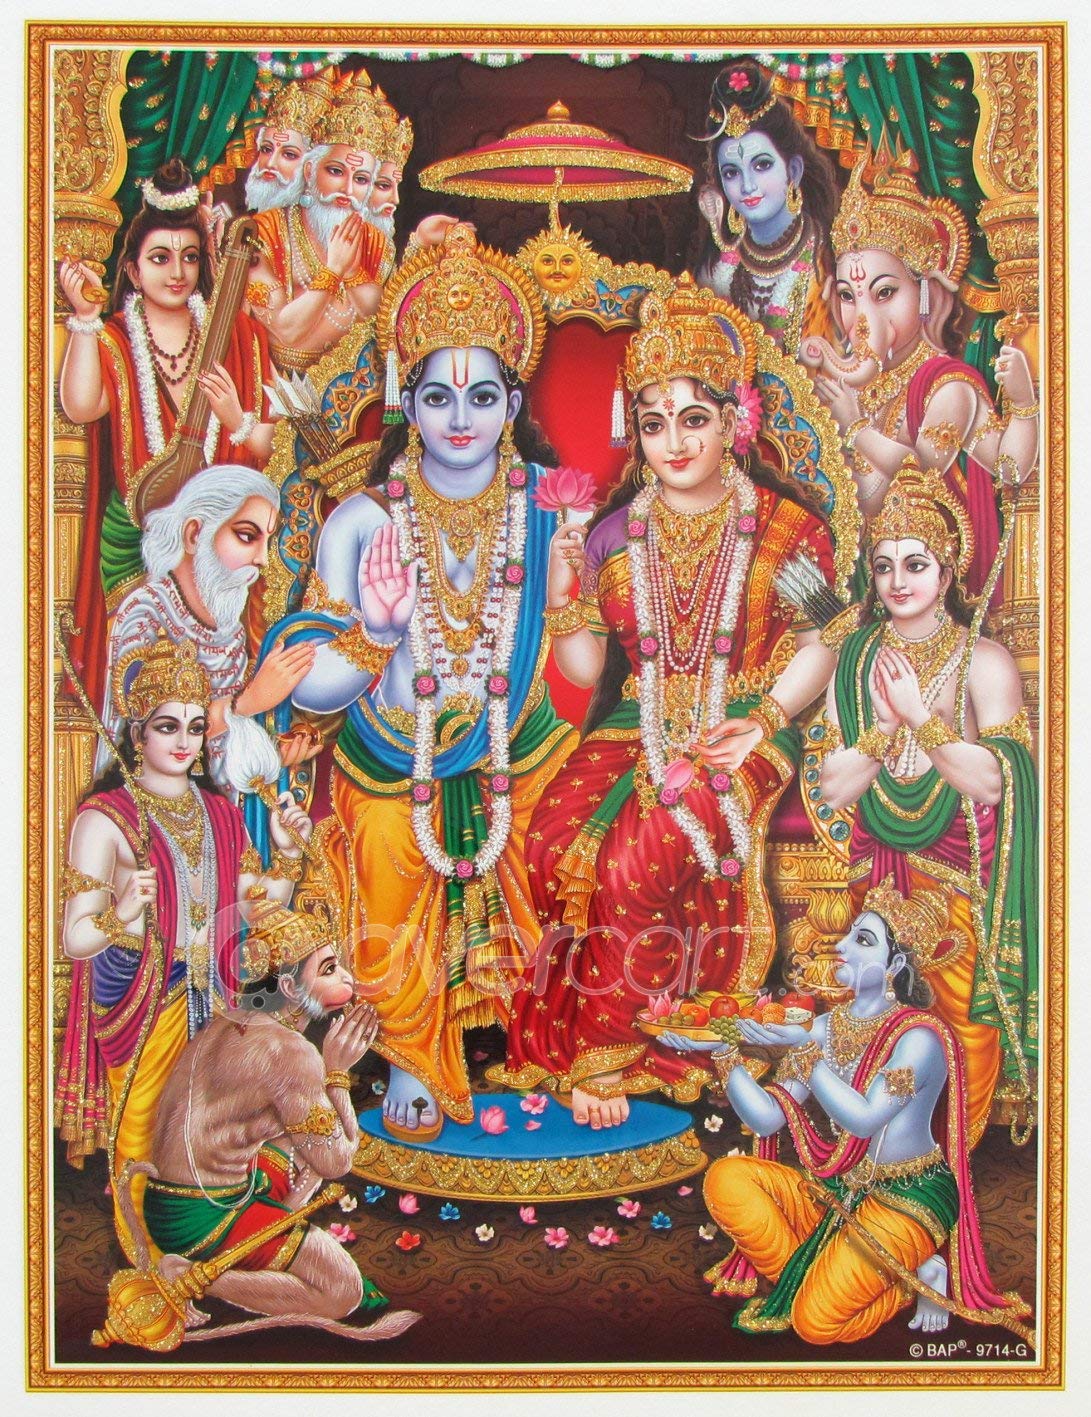 1091x1417 Hình nền Shri Ram Kích thước đầy đủ - 1091x1417 - Tải xuống Hình nền HD - WallpaperTip